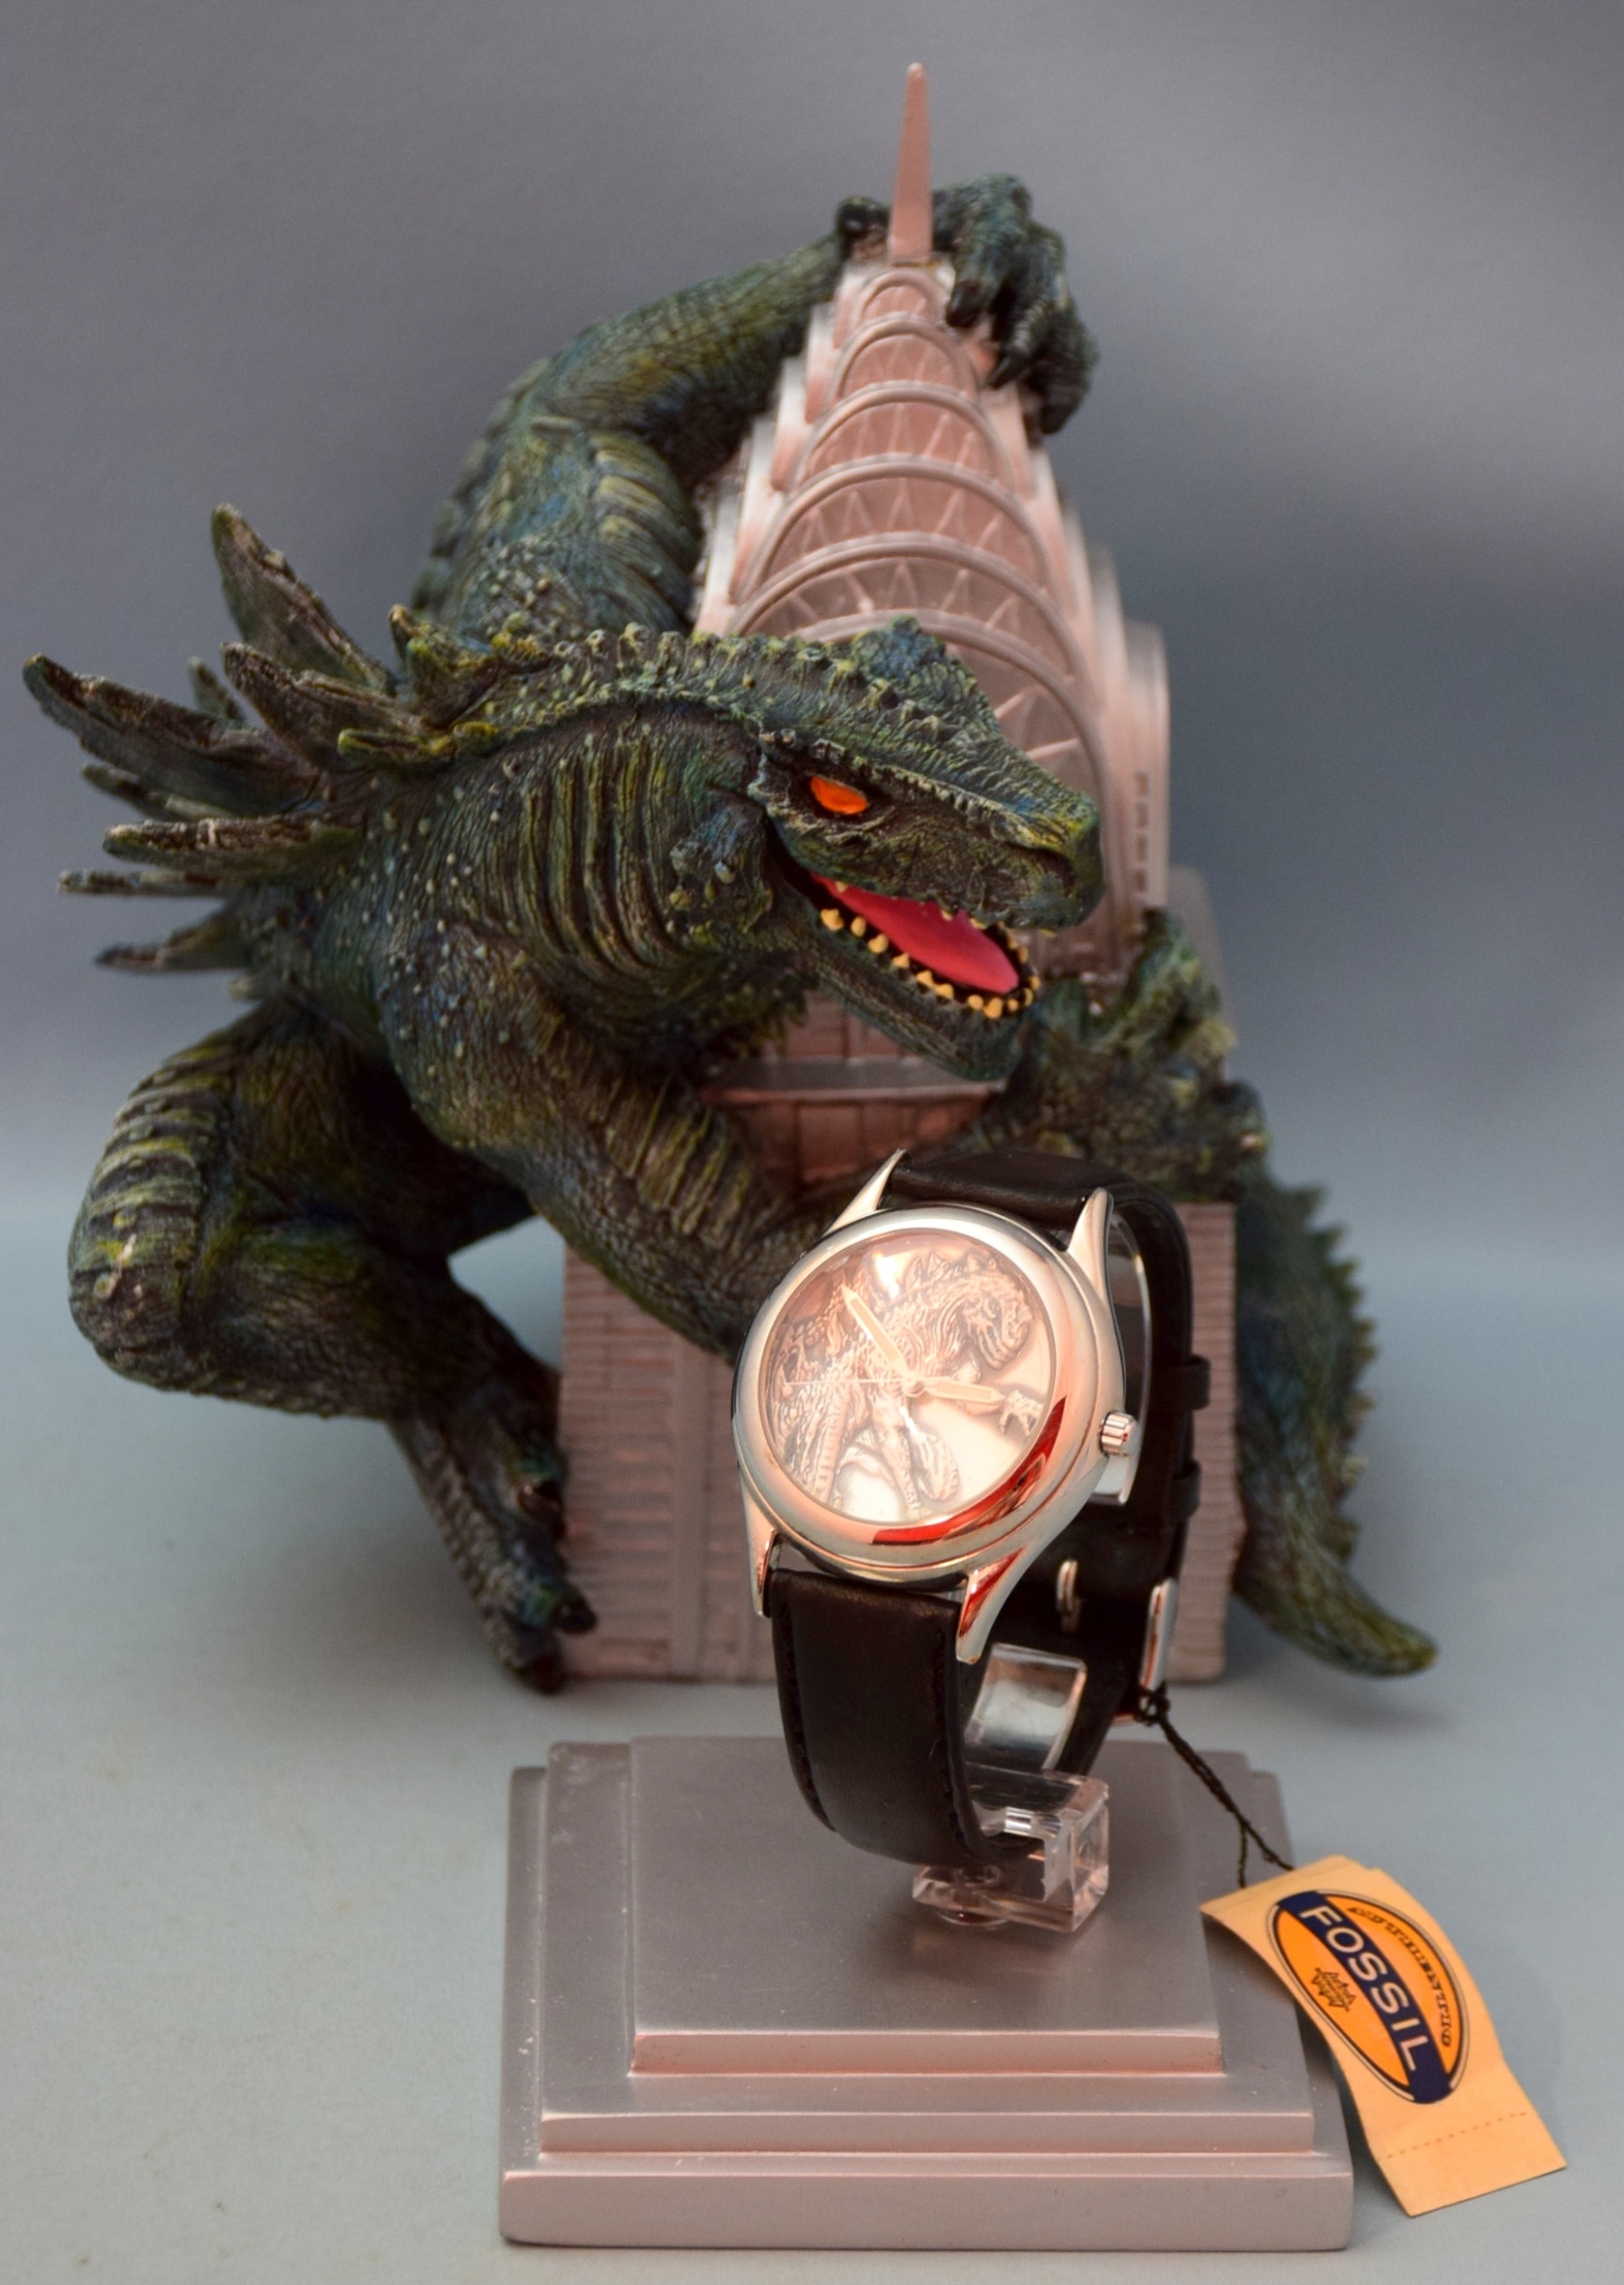 限定 FOSSIL ゴジラ腕時計 フィギュア - 腕時計(アナログ)